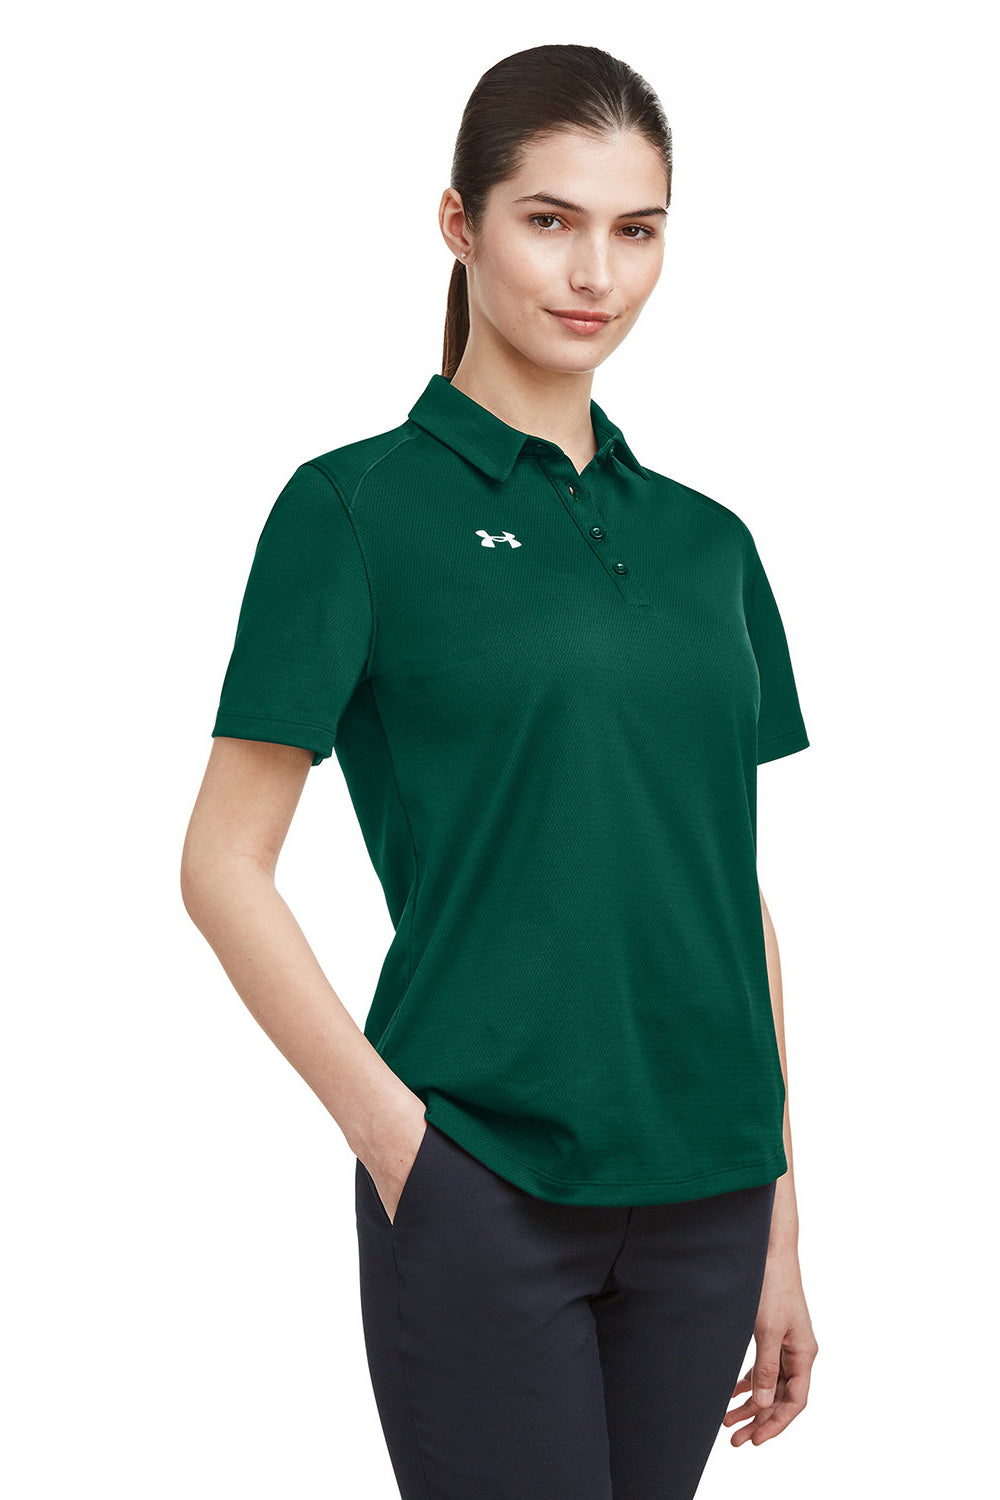 Under Armour 1370431 Womens Tech Moisture Wicking Short Sleeve Polo Shirt Forest Green Model 3Q